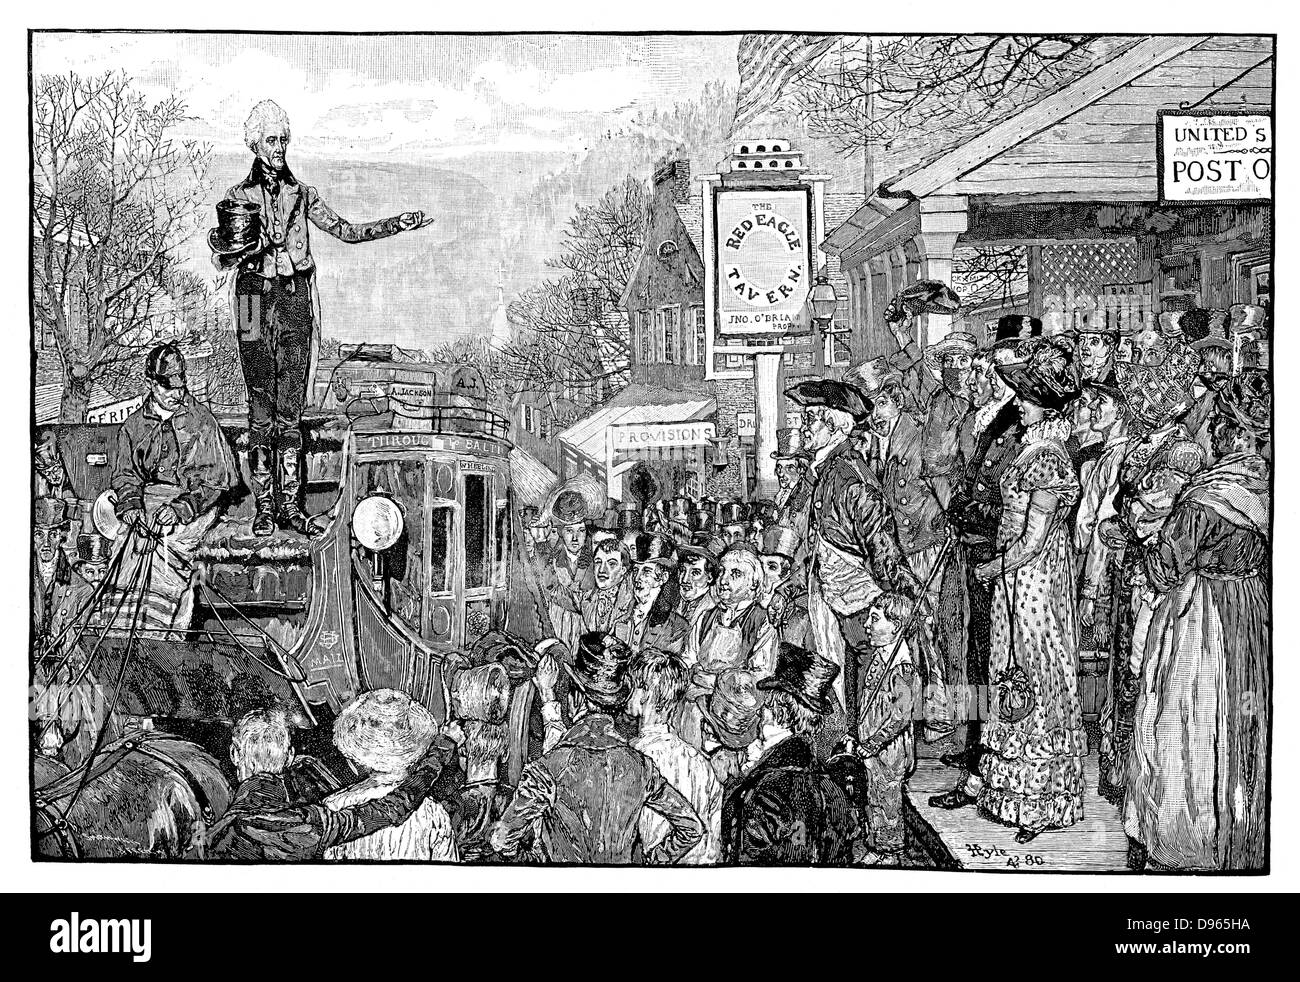 Andrew Jackson (1767-1845), 7e président des Etats-Unis, en tant que président élu, livrant un discours depuis le siège conducteur de son entraîneur sur son voyage triomphal à Washington, 1828. Gravure tirée de "Harper's Weekly", 1881. Banque D'Images